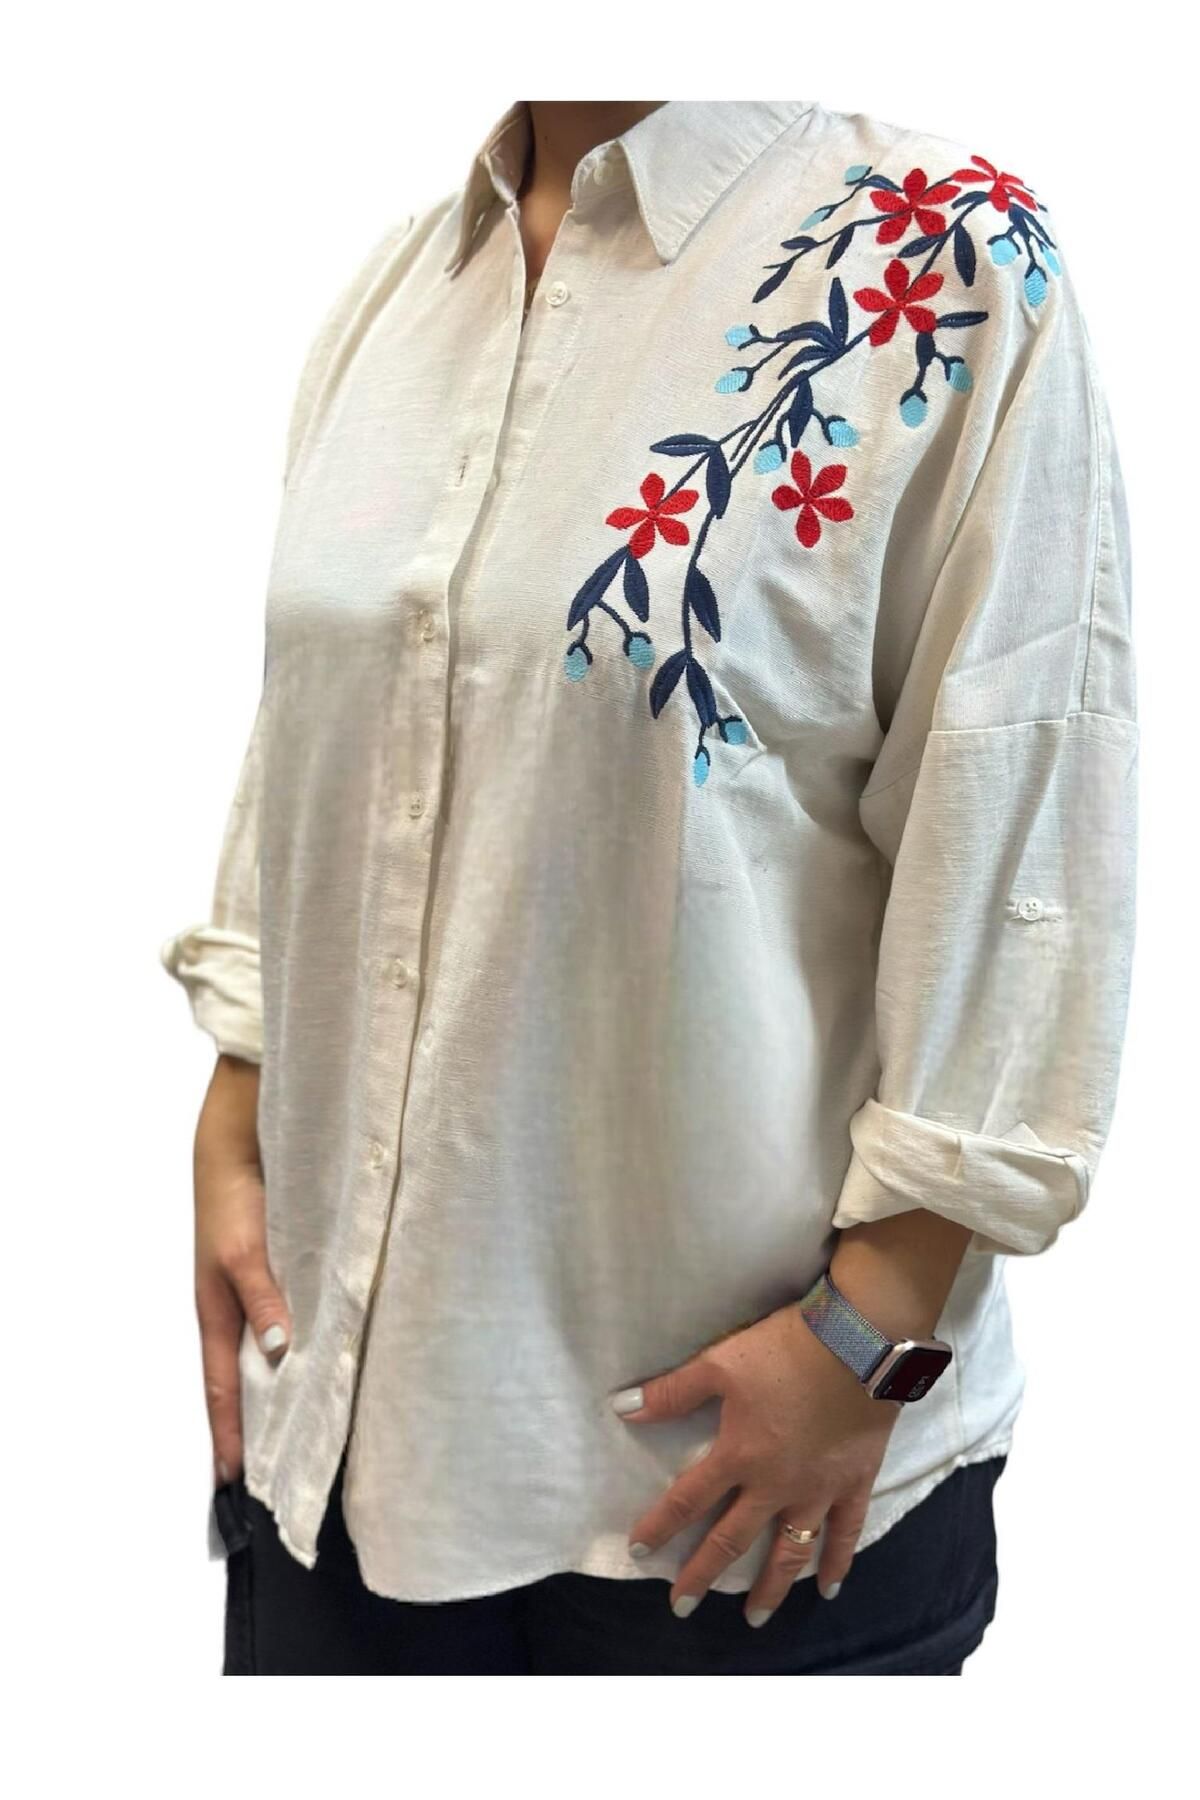 Antalya Şans Butik Kadın Gömlek Keten Kumaş Omuz Nakış Çiçek Desenli Krem Standart Beden (42-4 BEDENE KADAR UYUMLU)